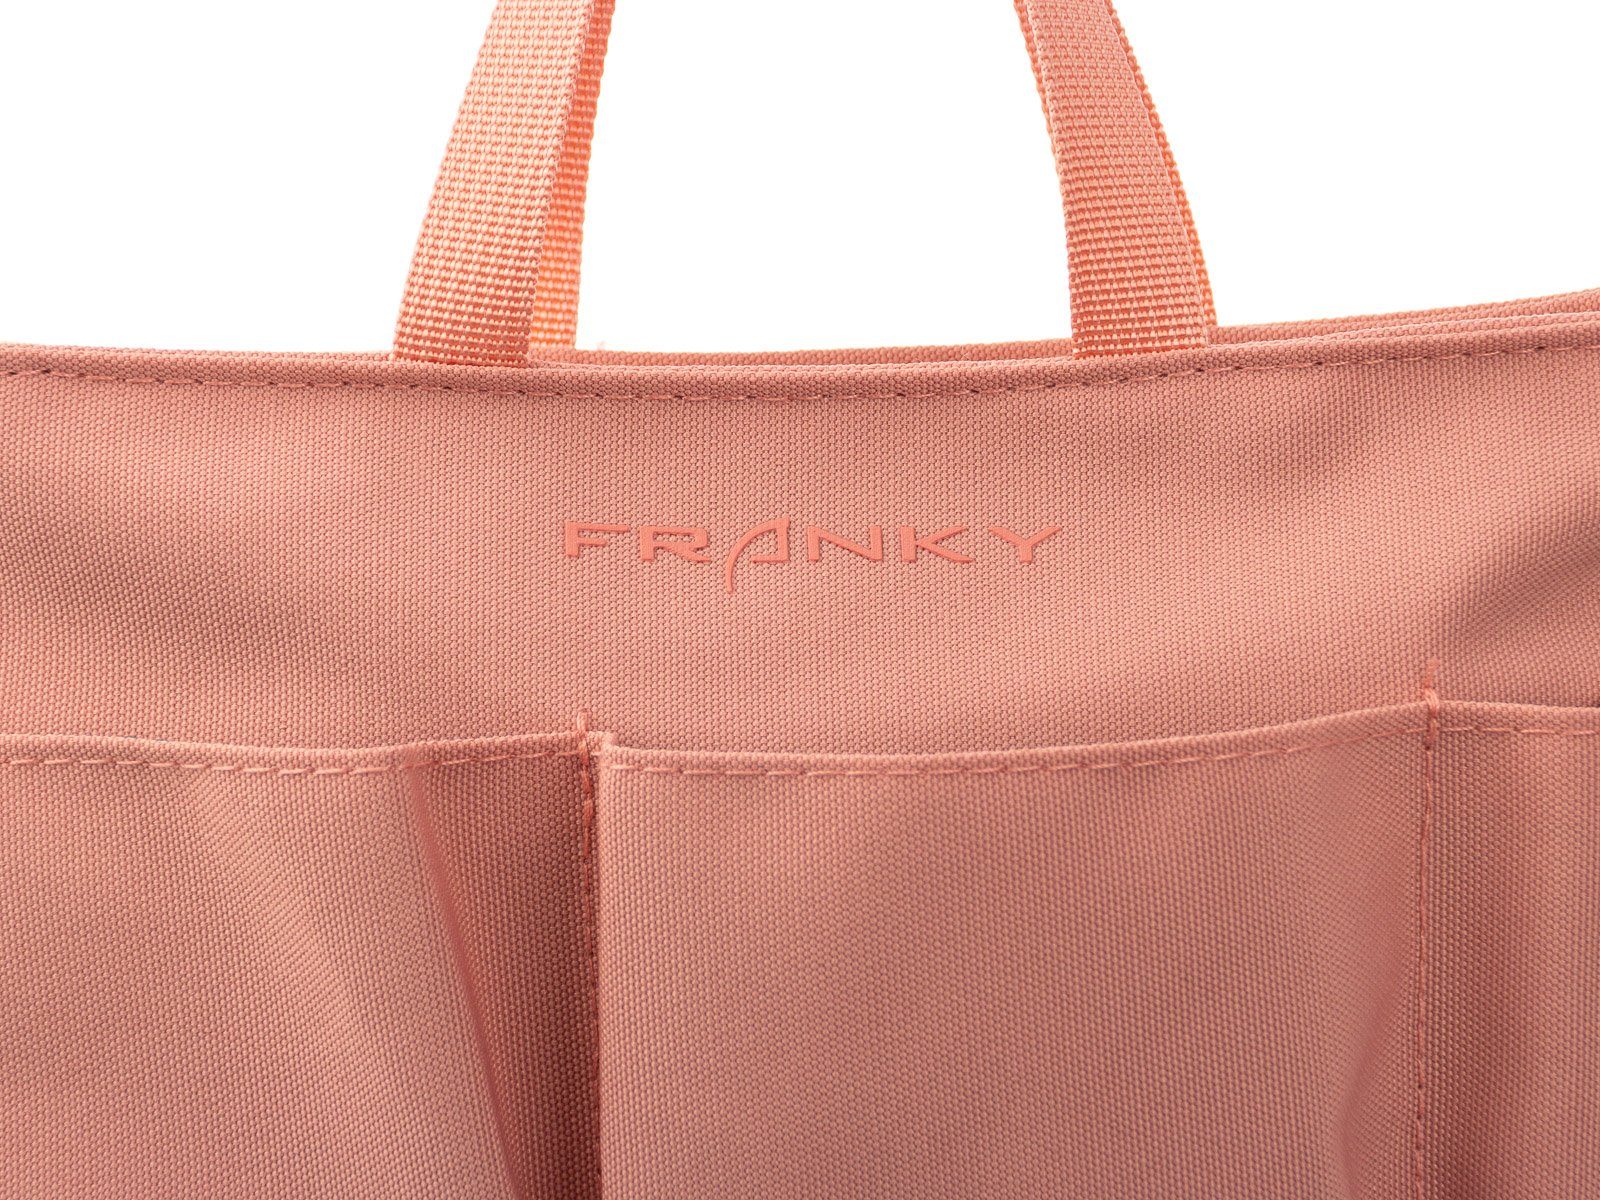 Kofferorganizer Taschen Packtasche, Franky Franky Organizer Bag BO2 schwarz in Bag